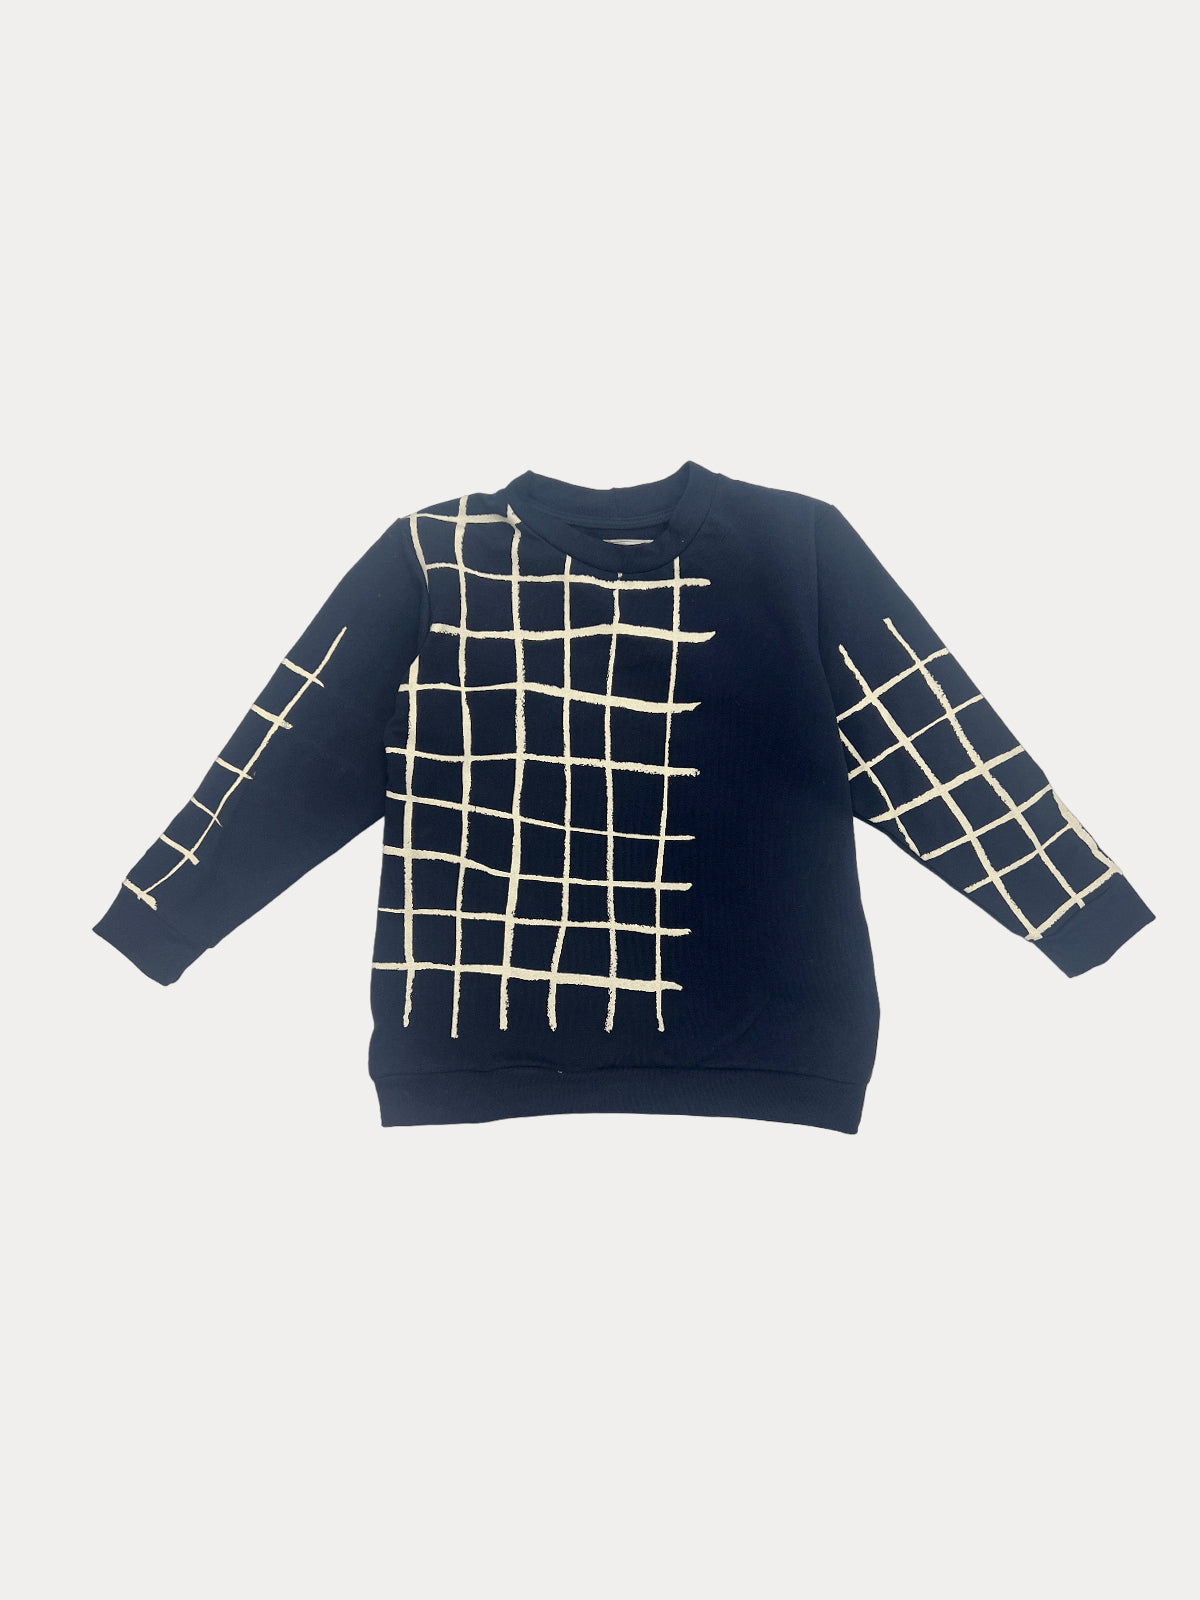 Grid dark blue children's sweater